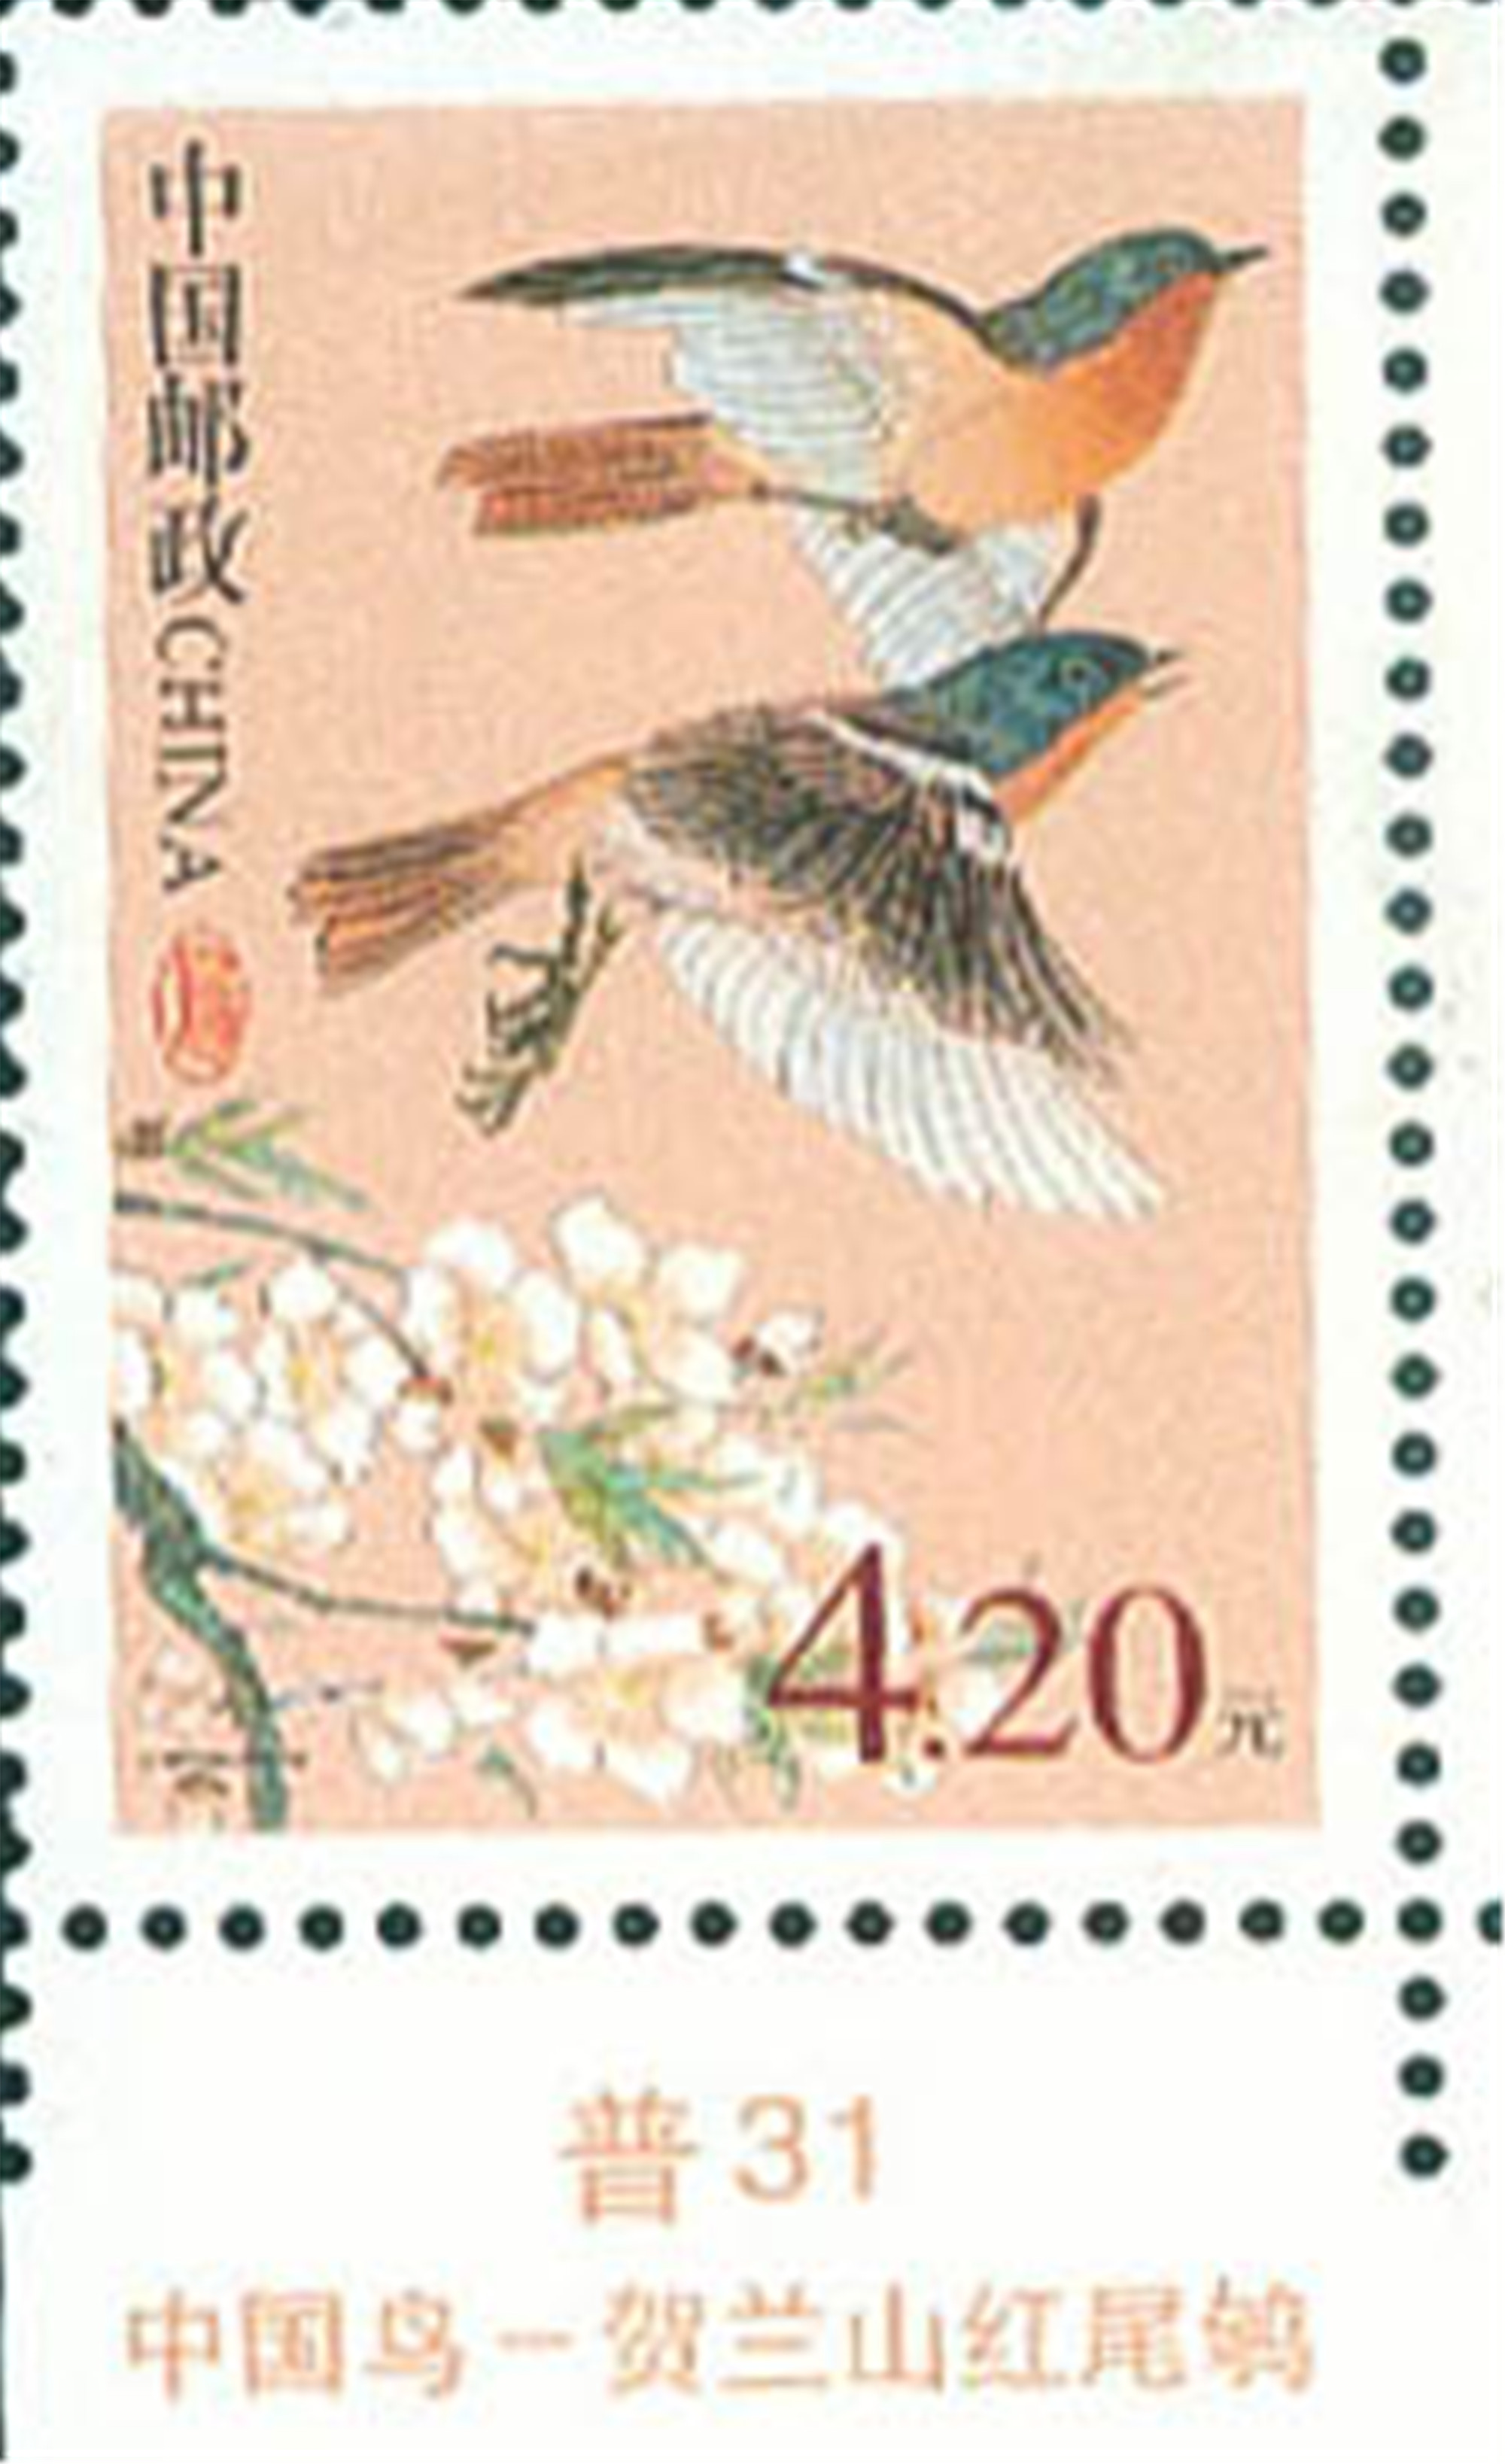 2000年发行的贺兰山红尾鸲邮票.jpg